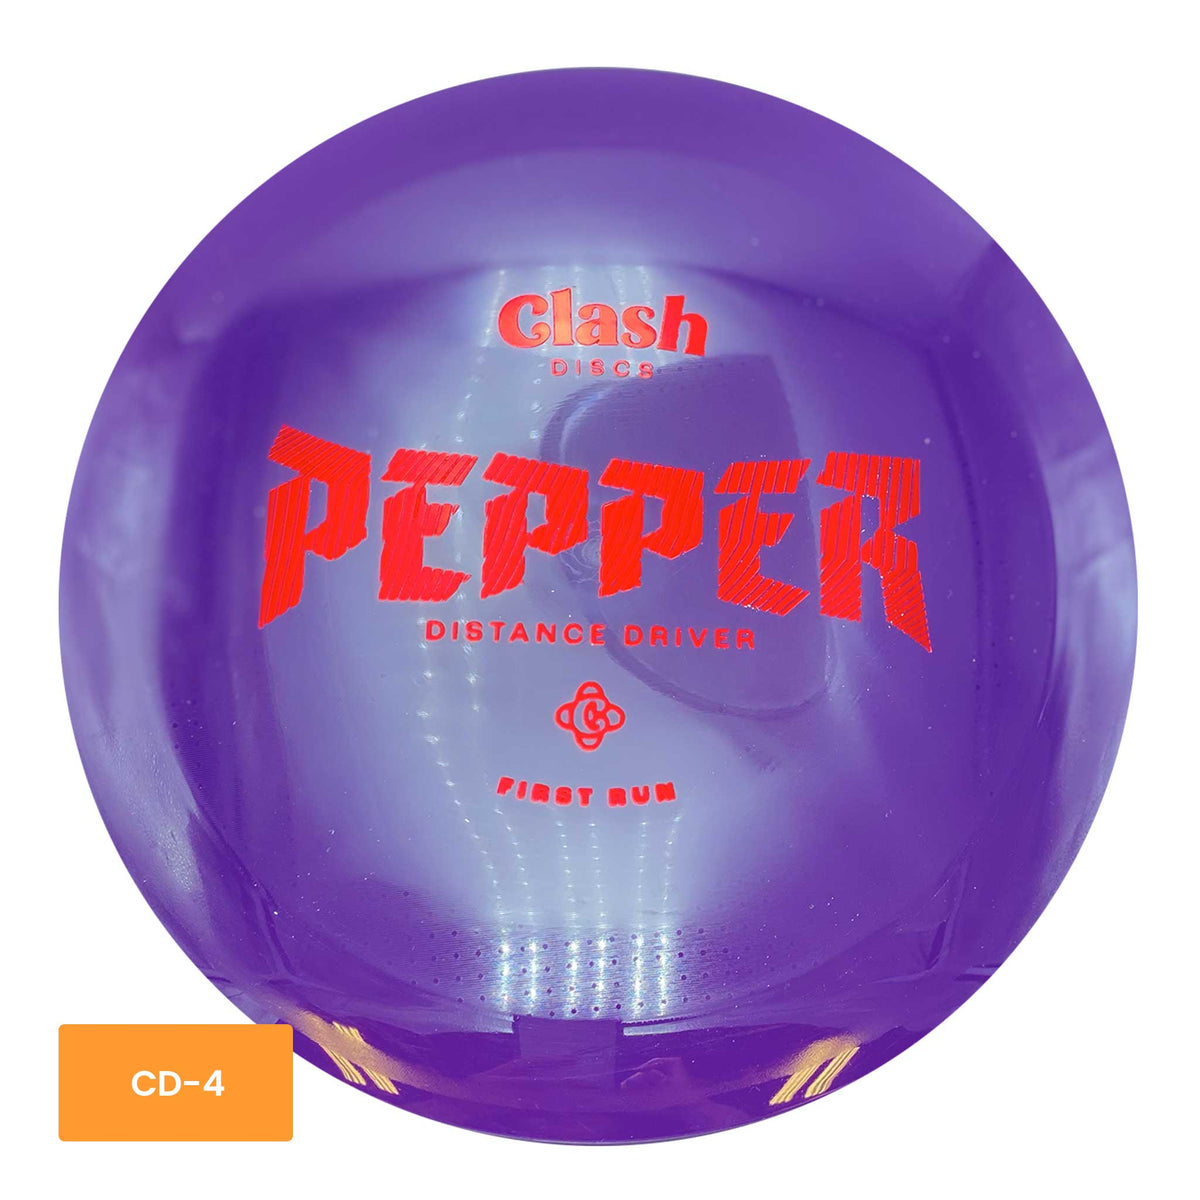 Clash Discs First Run Pepper Distance Drive - Purple